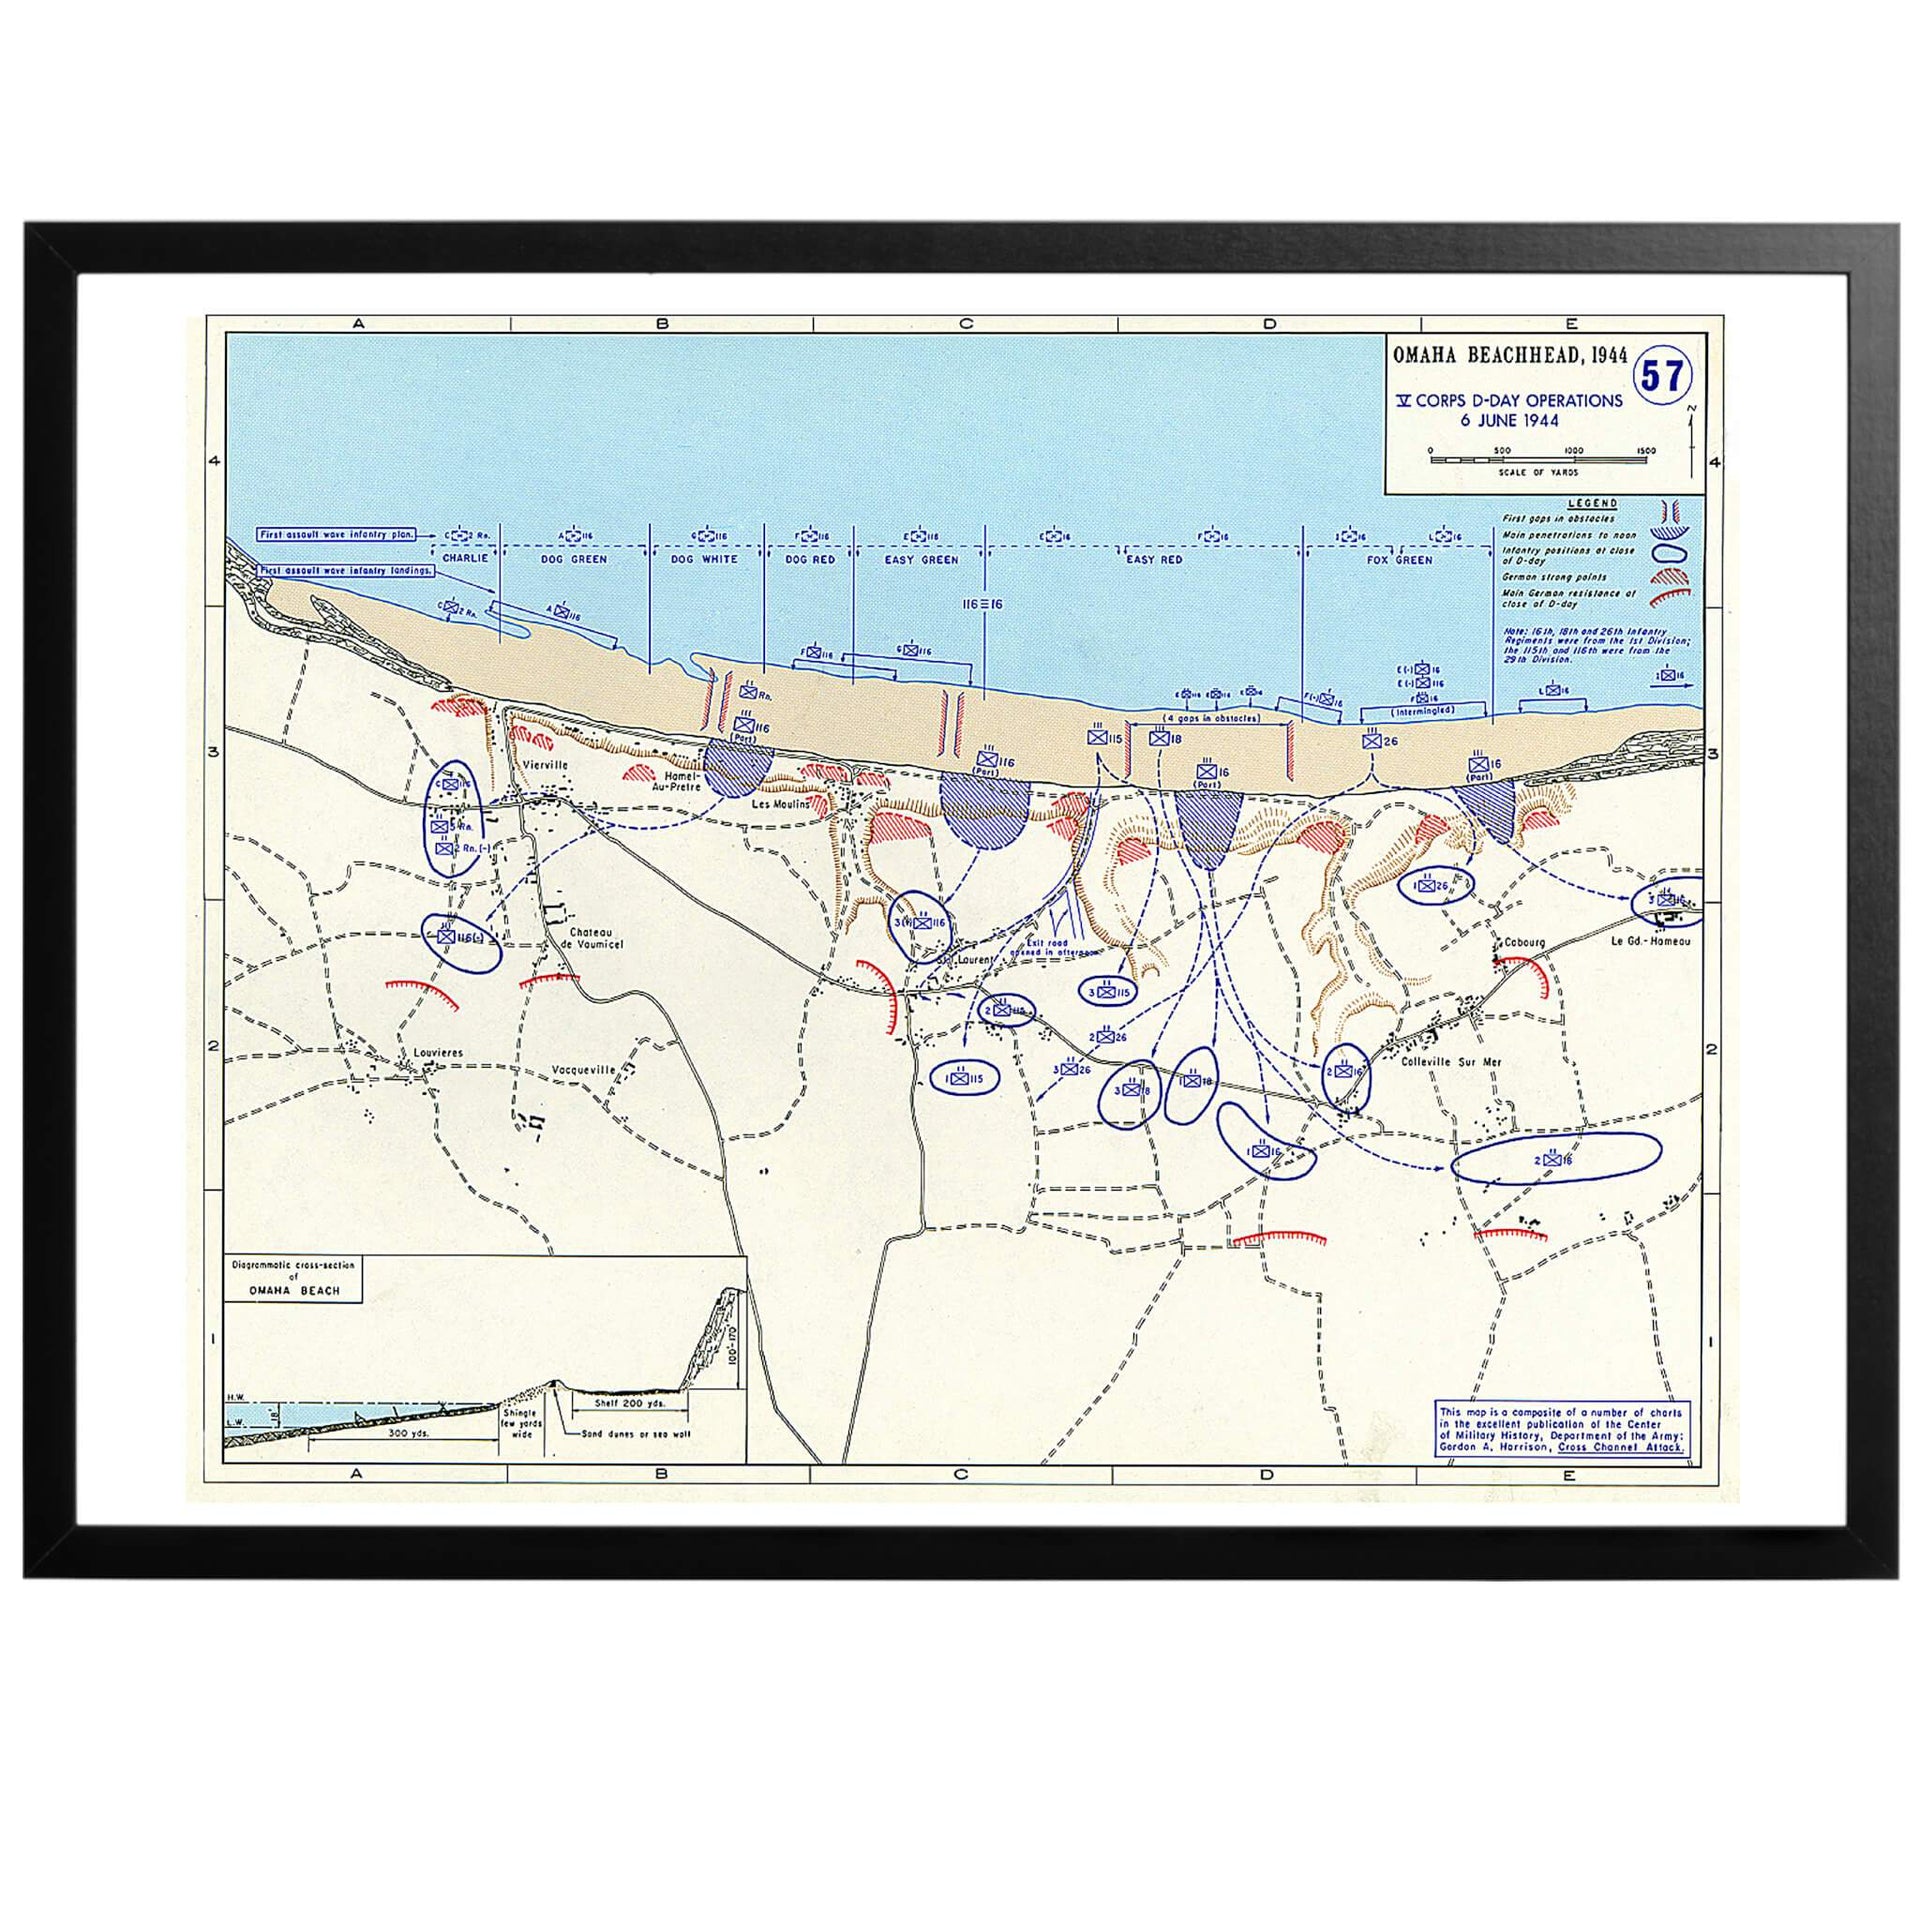 Omaha beach head map Amerikansk krigskarta En mycket intressant karta över det allierade brohuvudet på Omaha-sektionen av landstigningsområdet 6:e juni 1944. Denna sektion är mest känd och var den del där de allierade styrkorna mötte hårdast motstånd och åsamkades de största förlusterna under D dagen.